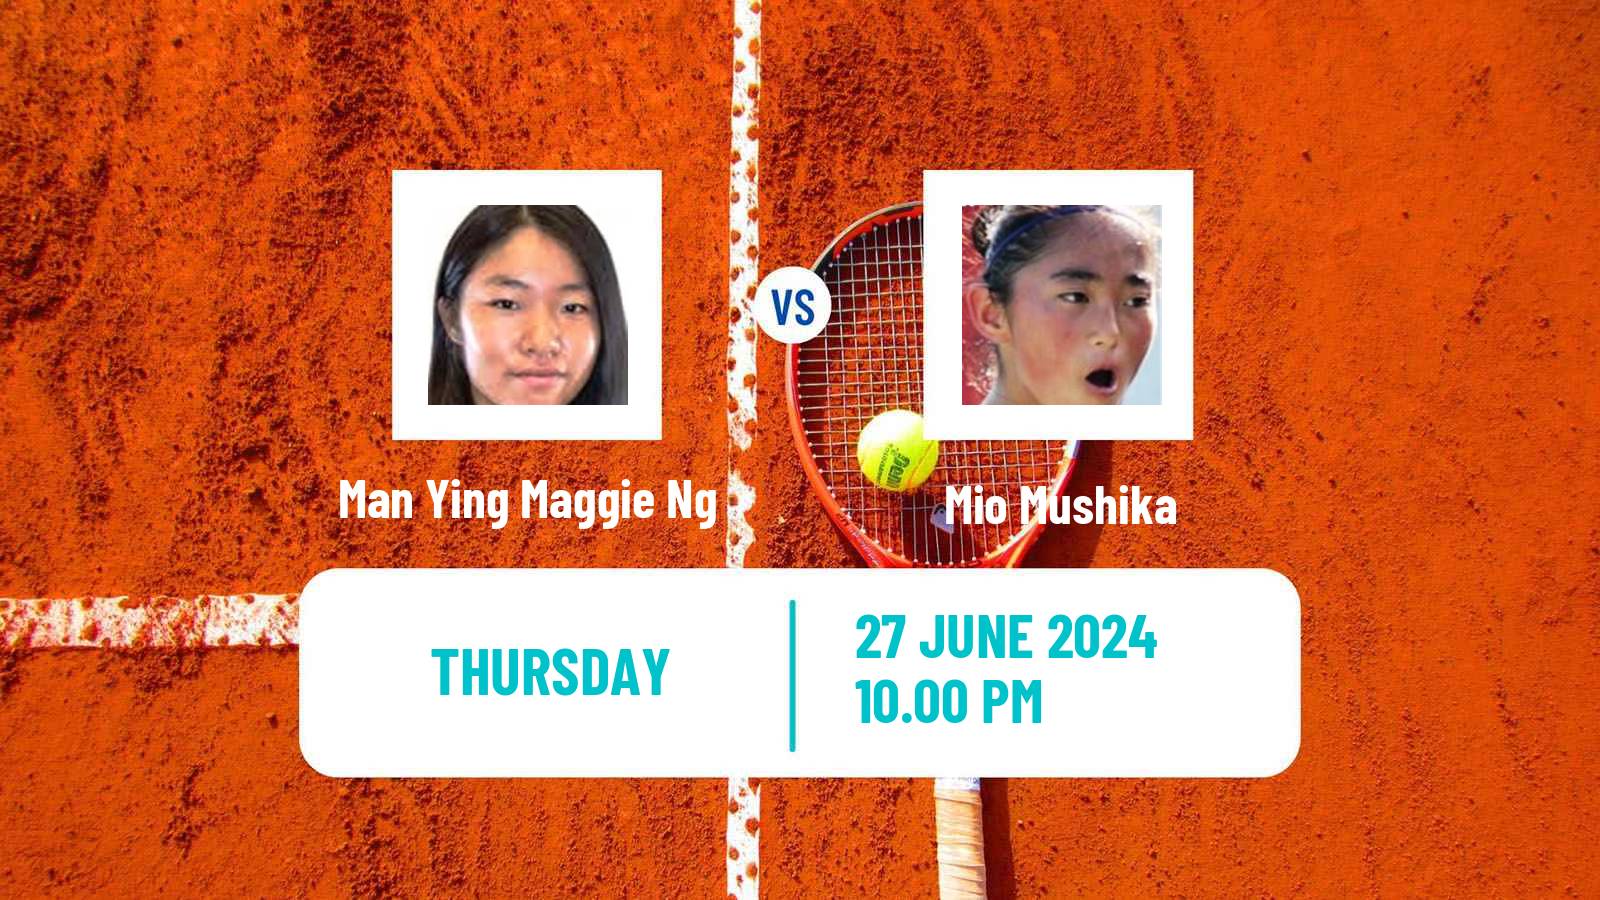 Tennis ITF W15 Hong Kong Women Man Ying Maggie Ng - Mio Mushika